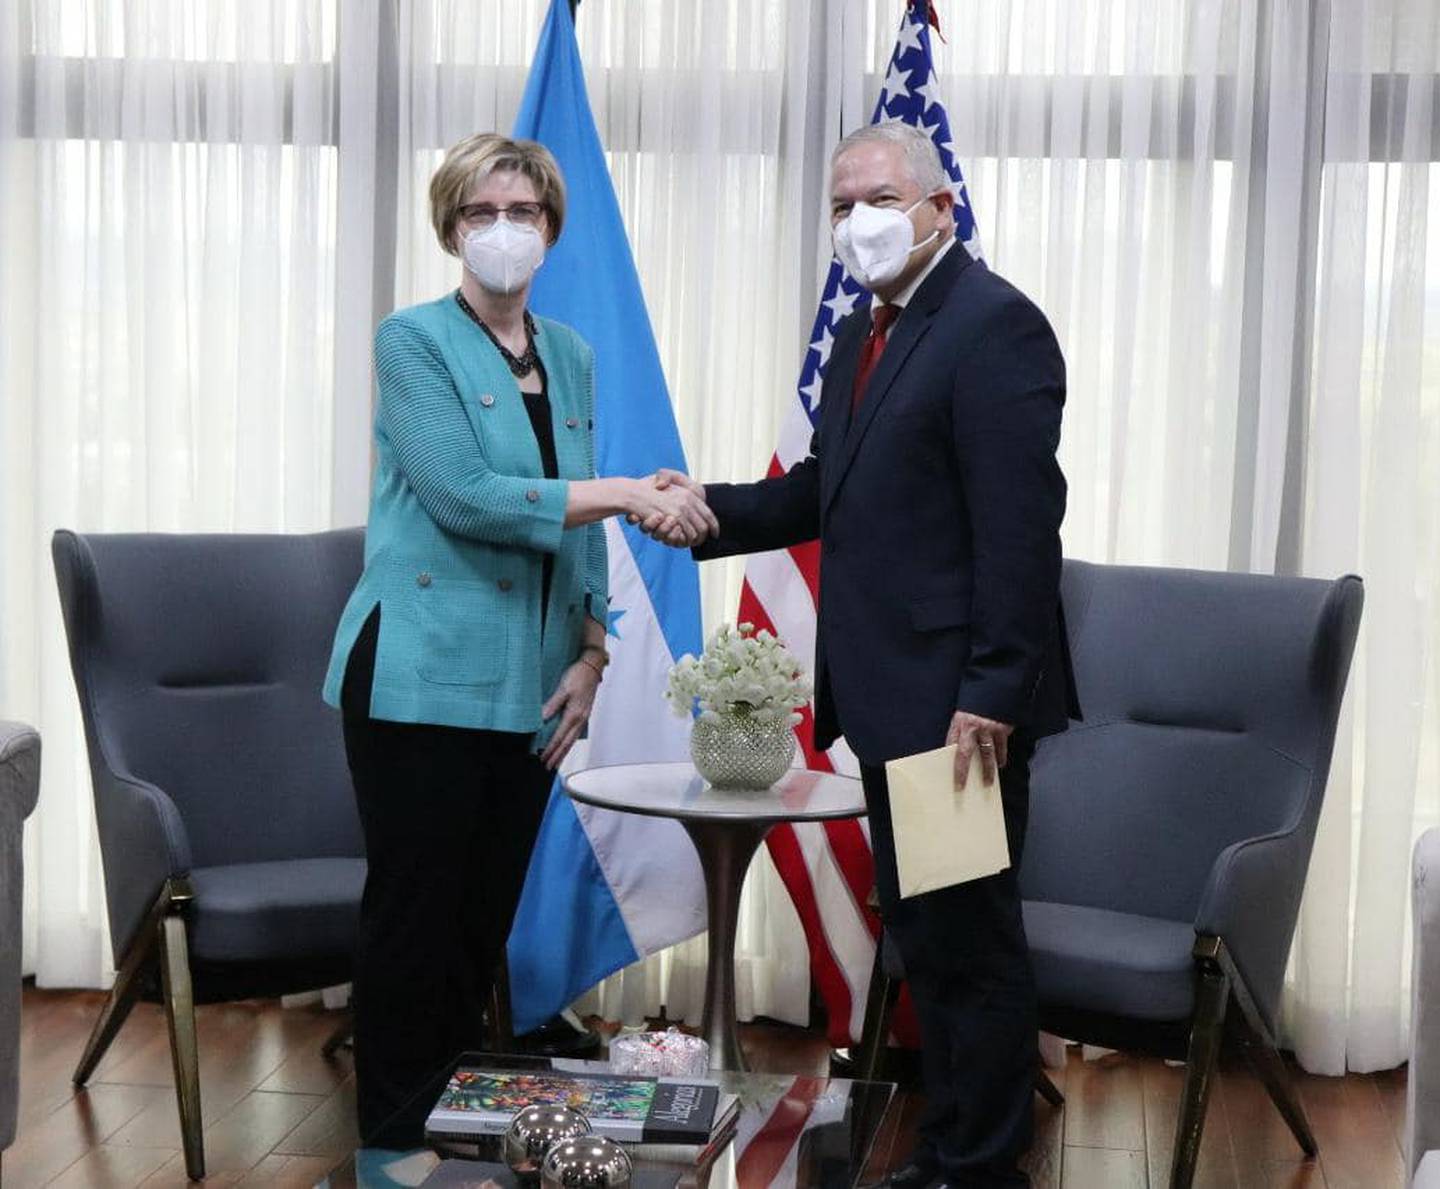 El secretario de Relaciones Exteriores, Enrique Reina, recibió el 11 de abril las Copias de estilo de la embajadora de EE.UU., Laura F. Dogu.dfd